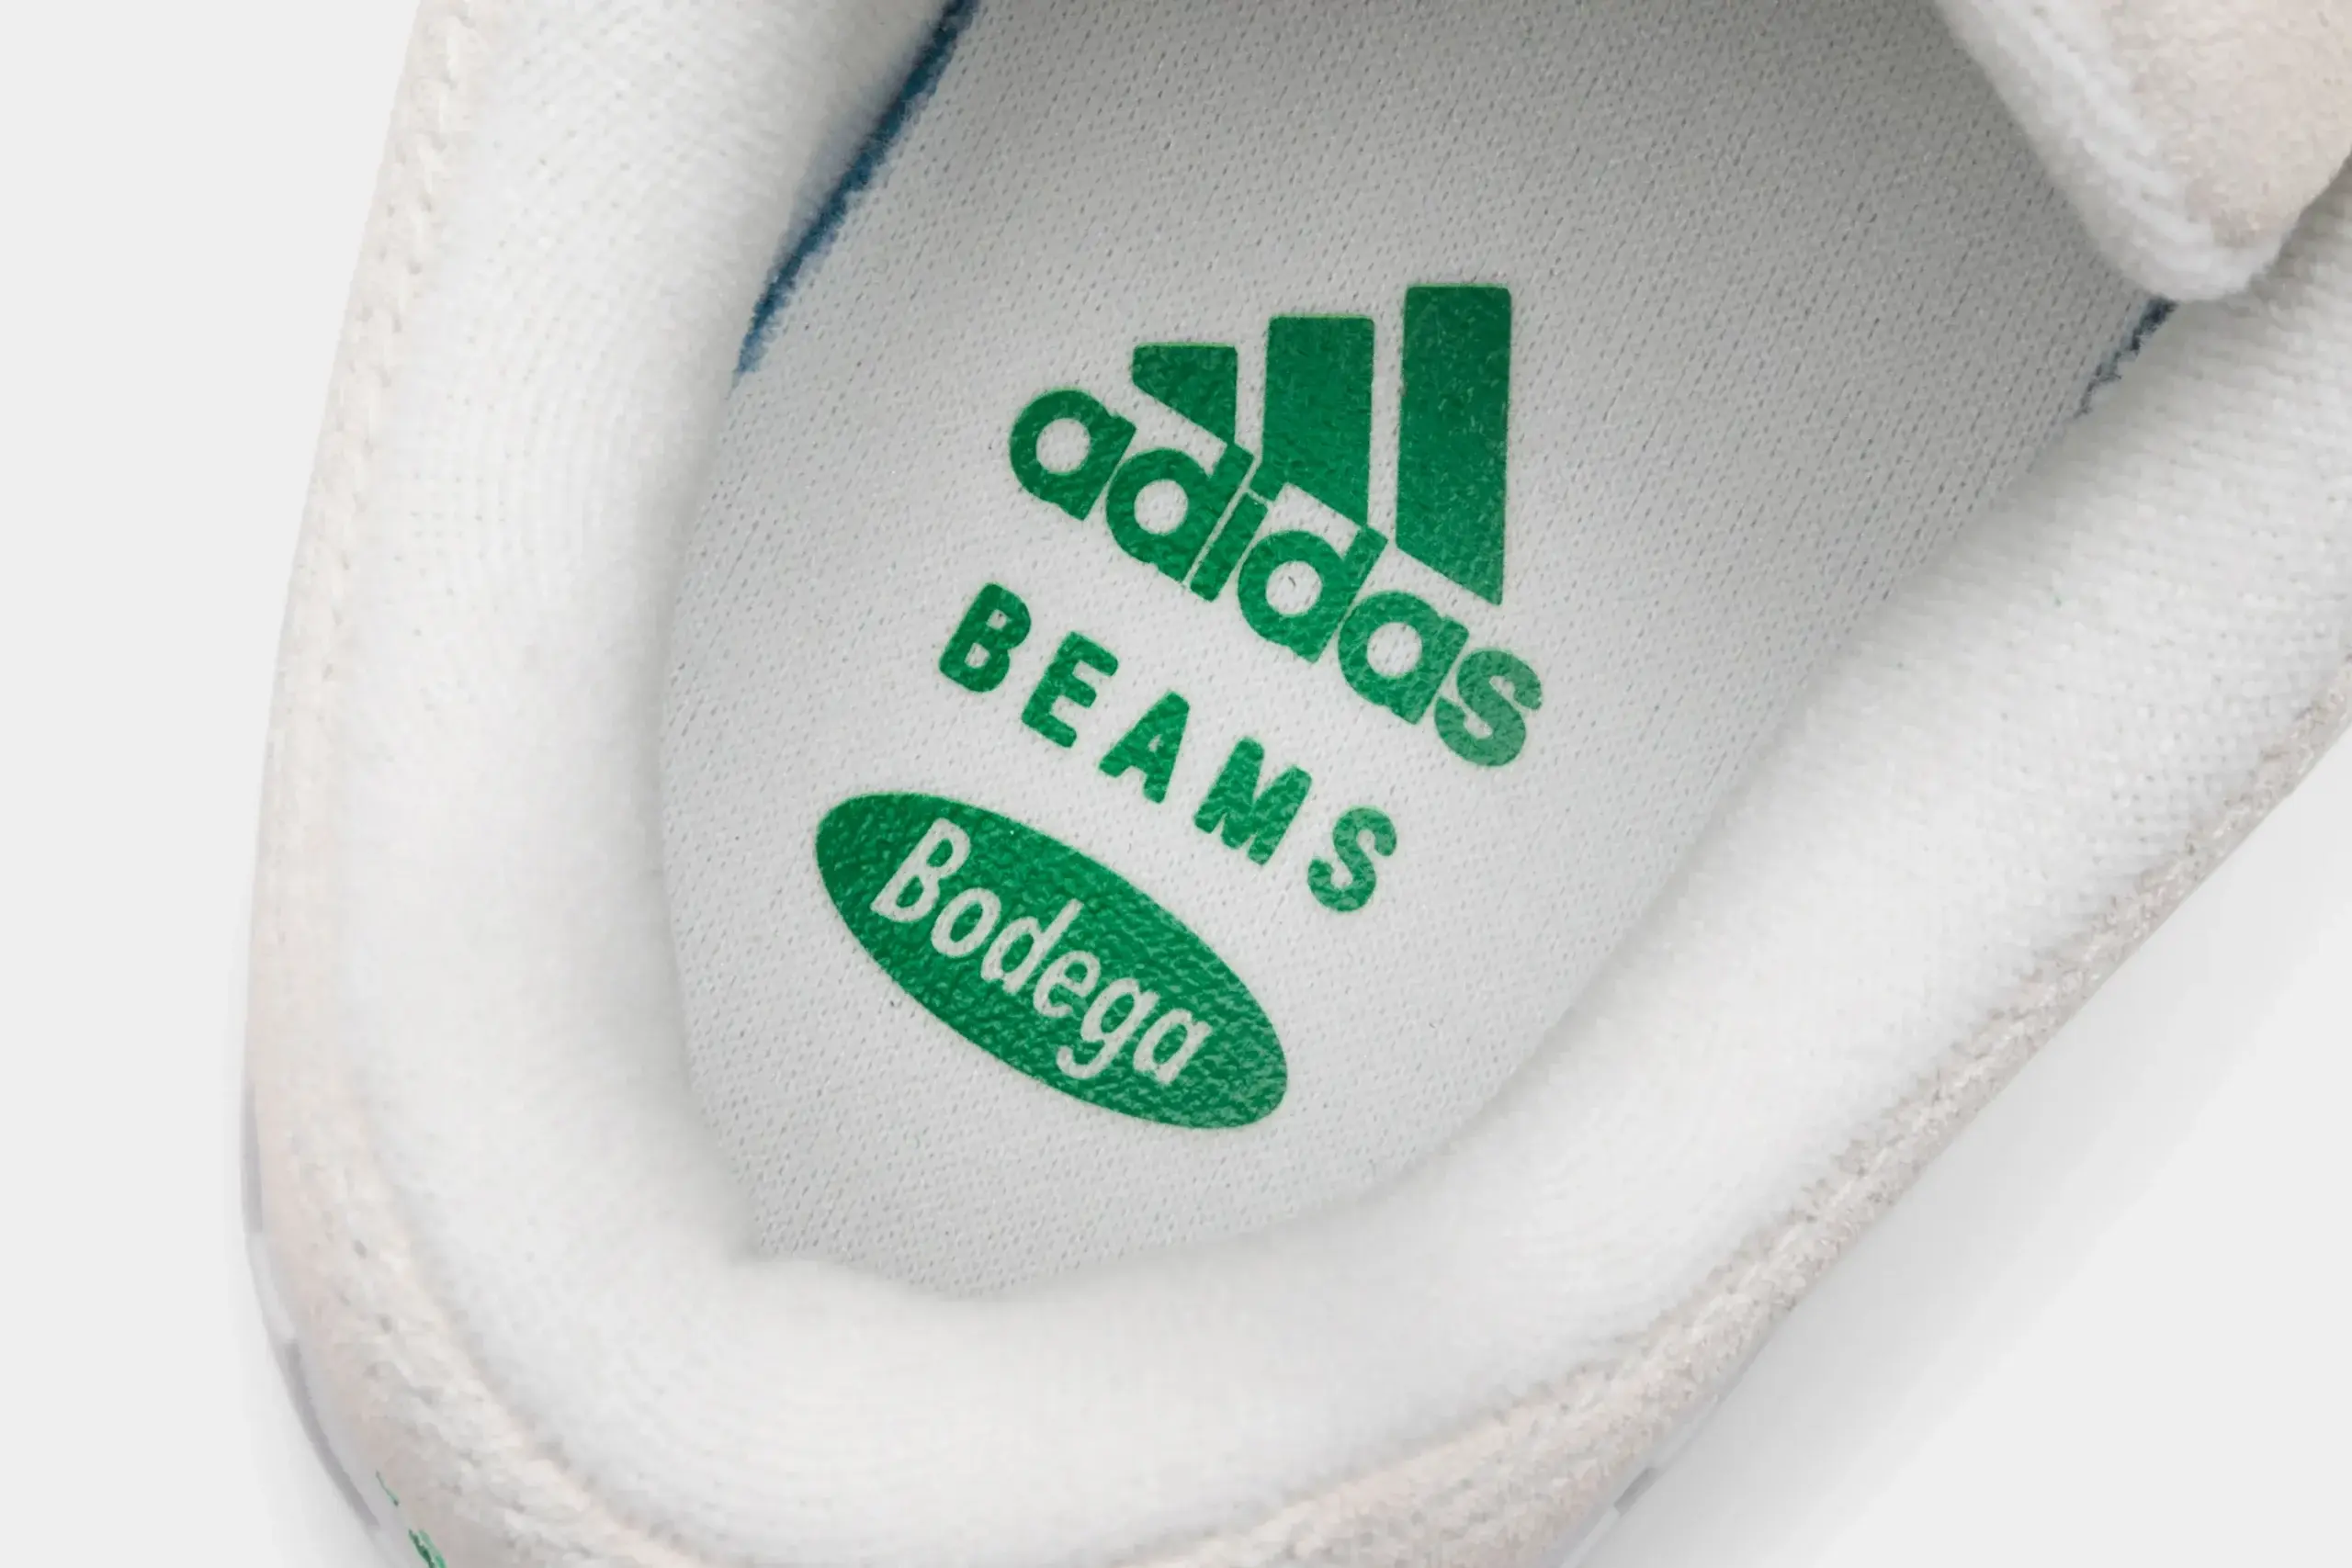 adidas Adimatic Bodega X Beams Off White/ Green/ Crystal White. detail shot met groen adidas logo, BEAMS logo en Bodega logo